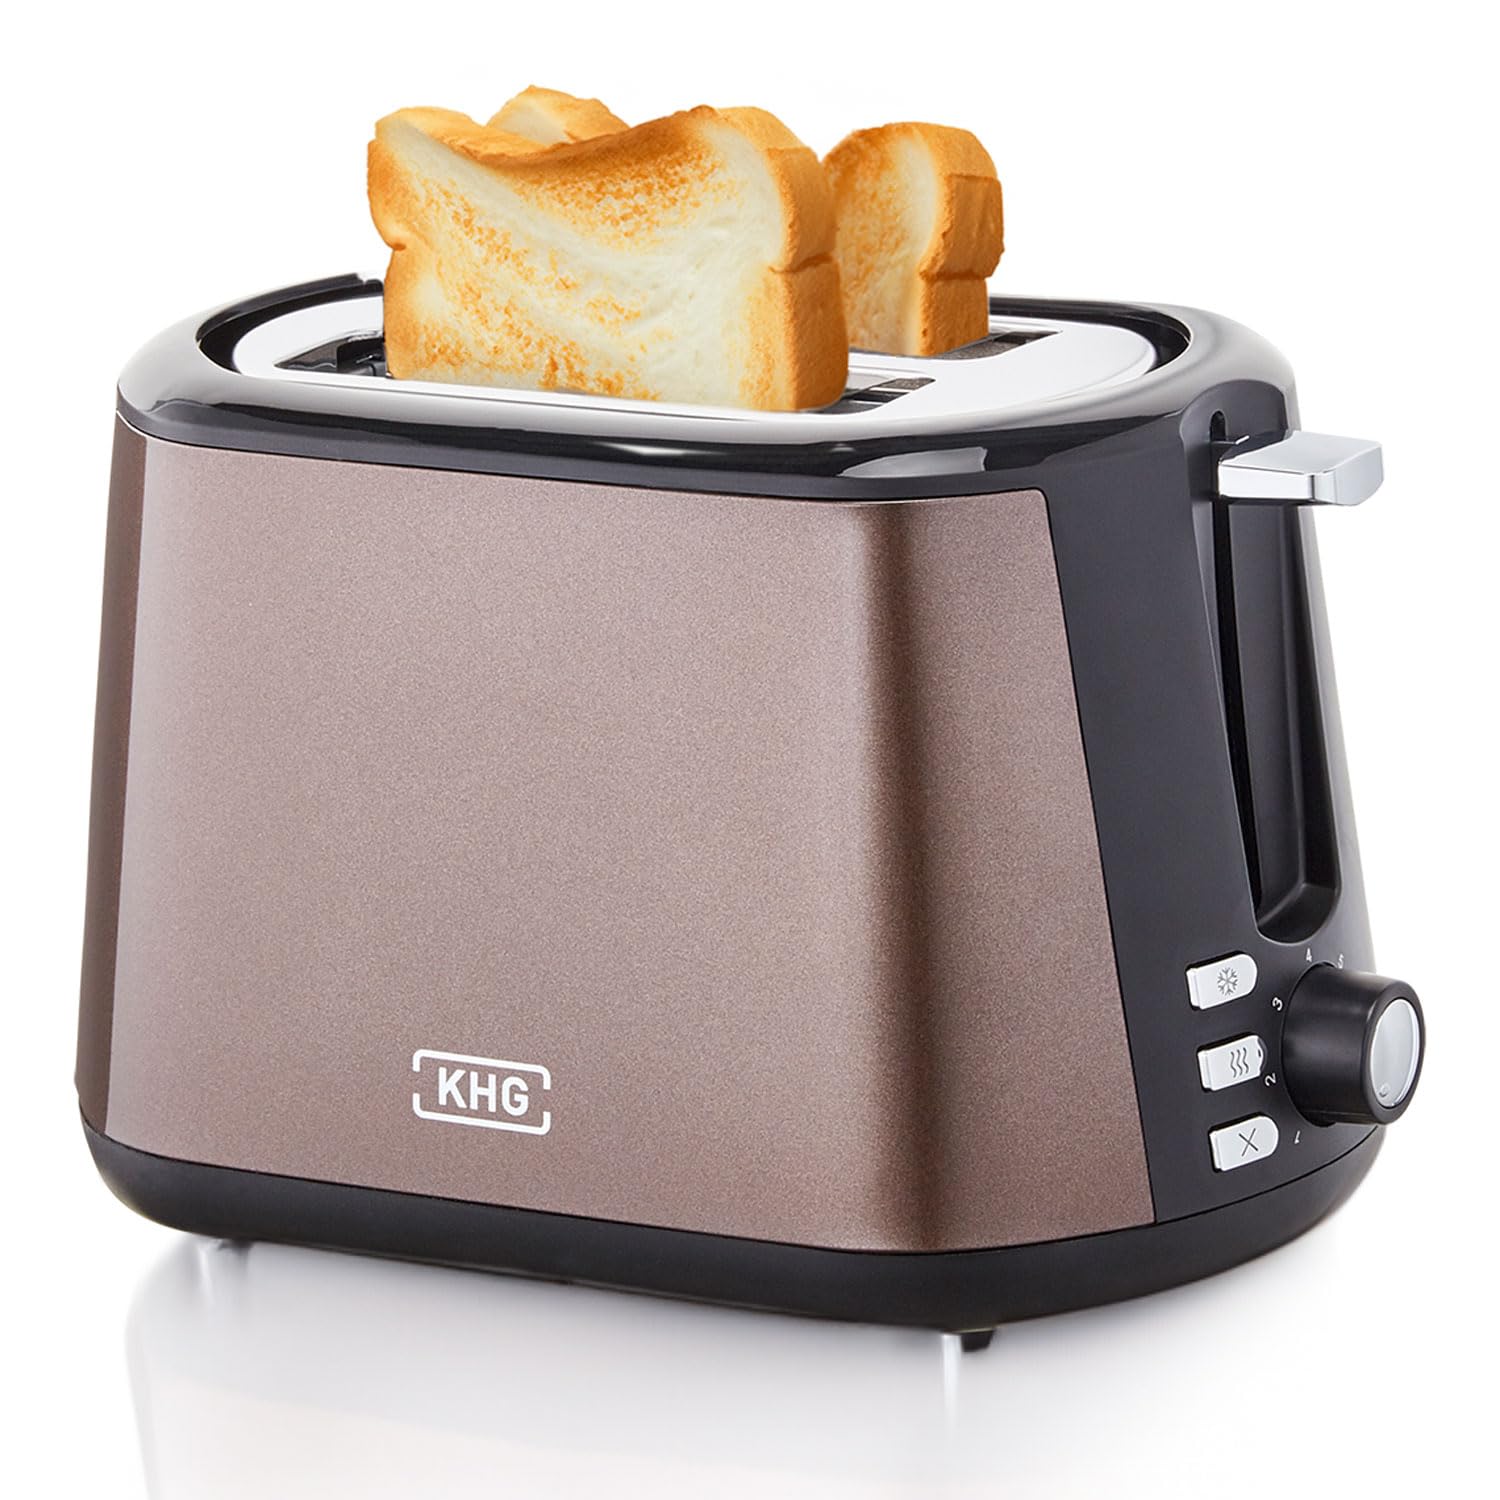 KHG Toaster TO-806(MMS) | Toaster 2 Scheiben Braun 850 W | mit Brötchenaufsatz, 7 Röstgradstufen mit Bräunungsgradkontrolle, Krümelfach, Auftau- und Aufwärmfunktion